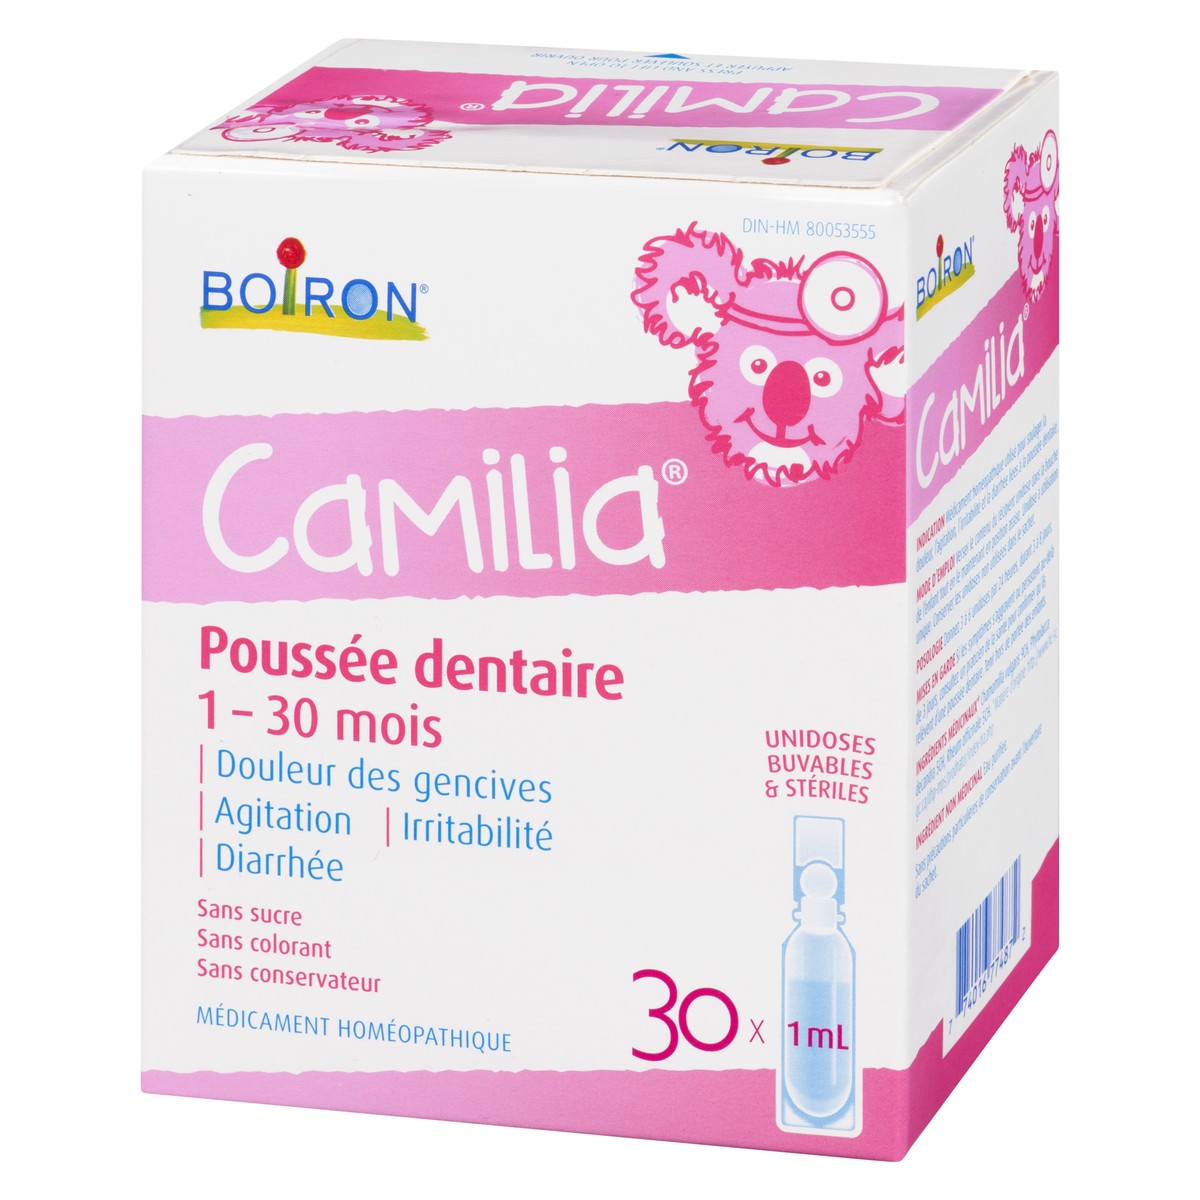 Camilia de Boiron - Poussée dentaire de bébé 